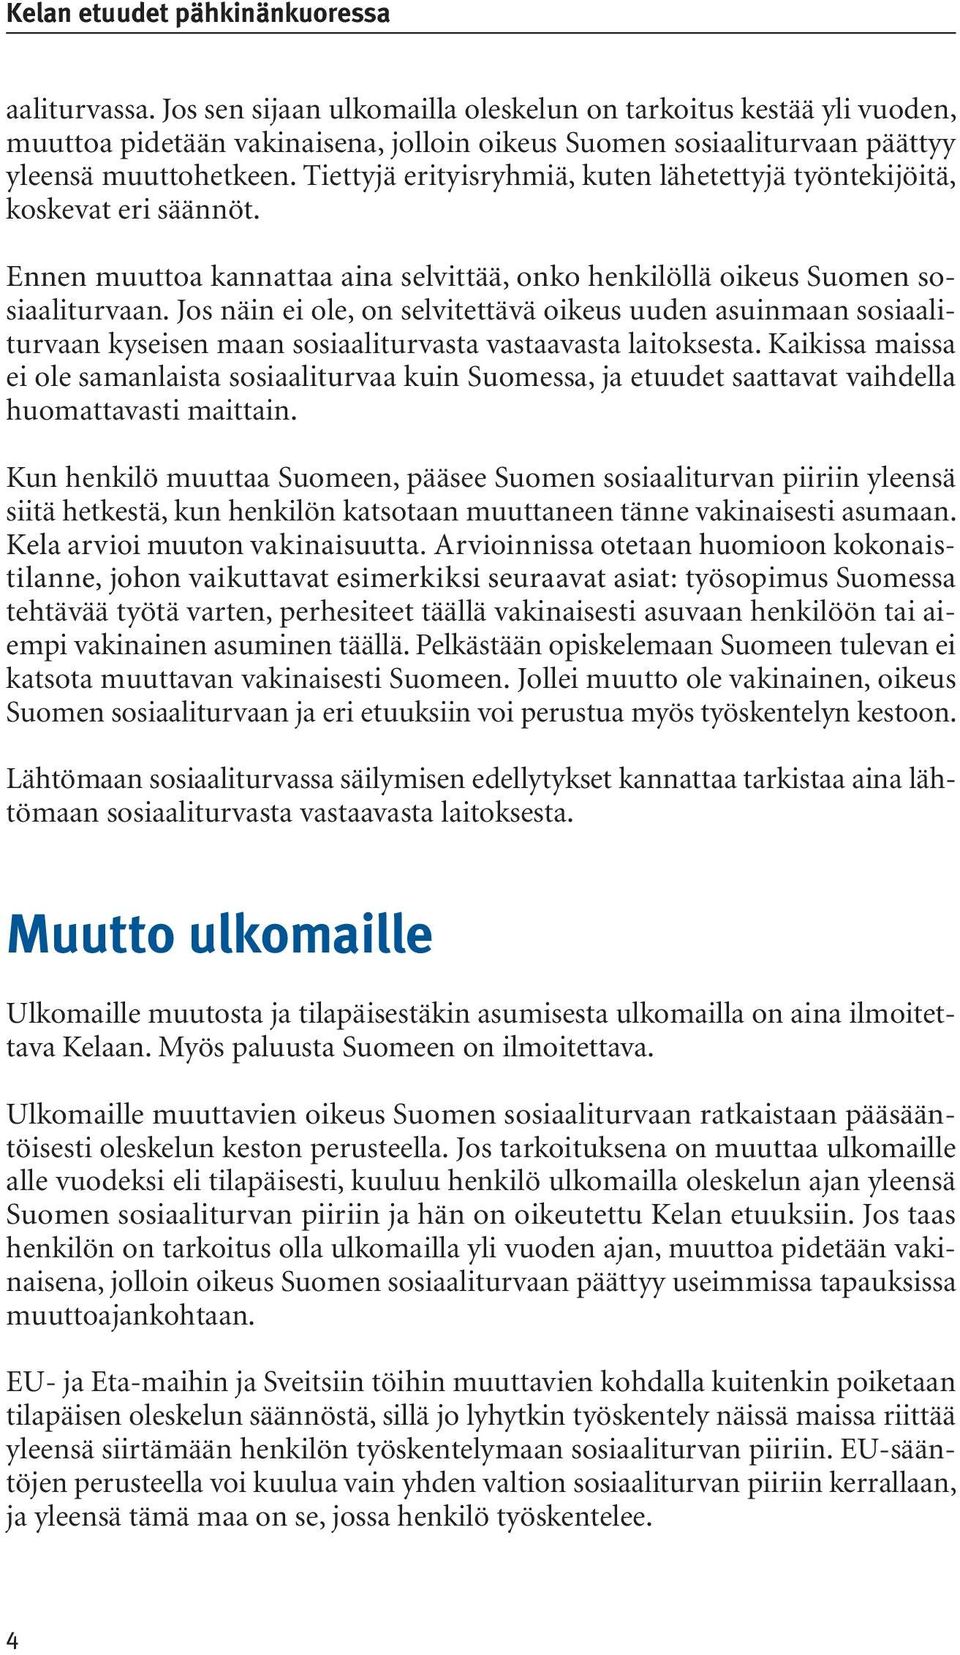 Tiettyjä erityisryhmiä, kuten lähetettyjä työntekijöitä, koskevat eri säännöt. Ennen muuttoa kannattaa aina selvittää, onko henkilöllä oikeus Suomen sosiaaliturvaan.